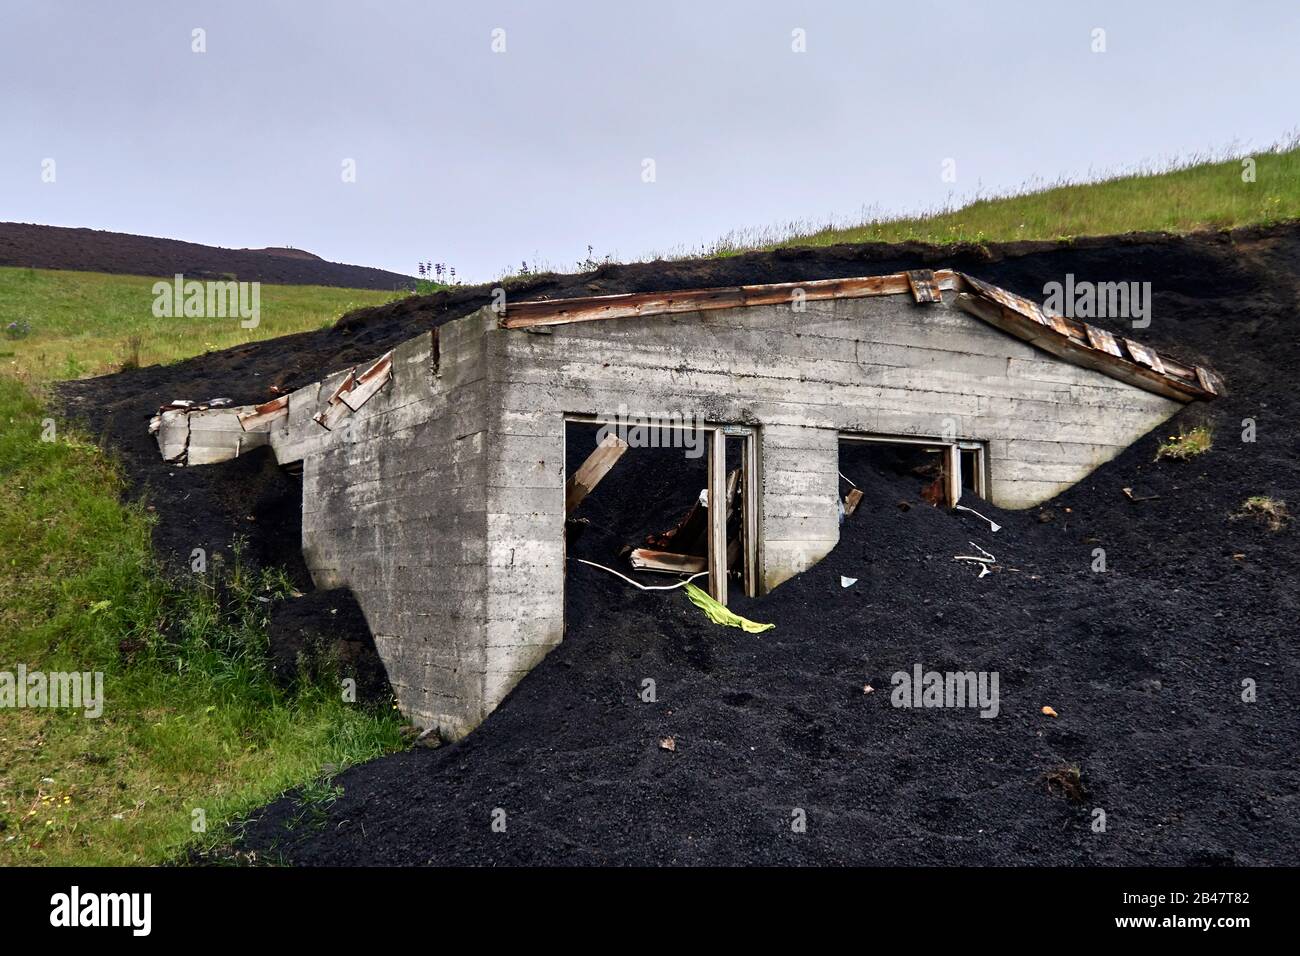 L'isola di Heimaey, il museo di Edheimar, l'eruzione islandese a Heimaey 1973 sepolto intorno a quattro centinaia di case. Gli archeologi hanno svelato ciò che rimaneva degli edifici, dando all'isola il soprannome di "Pompei del Nord", museo costruito sulle rovine delle case sepolte Foto Stock